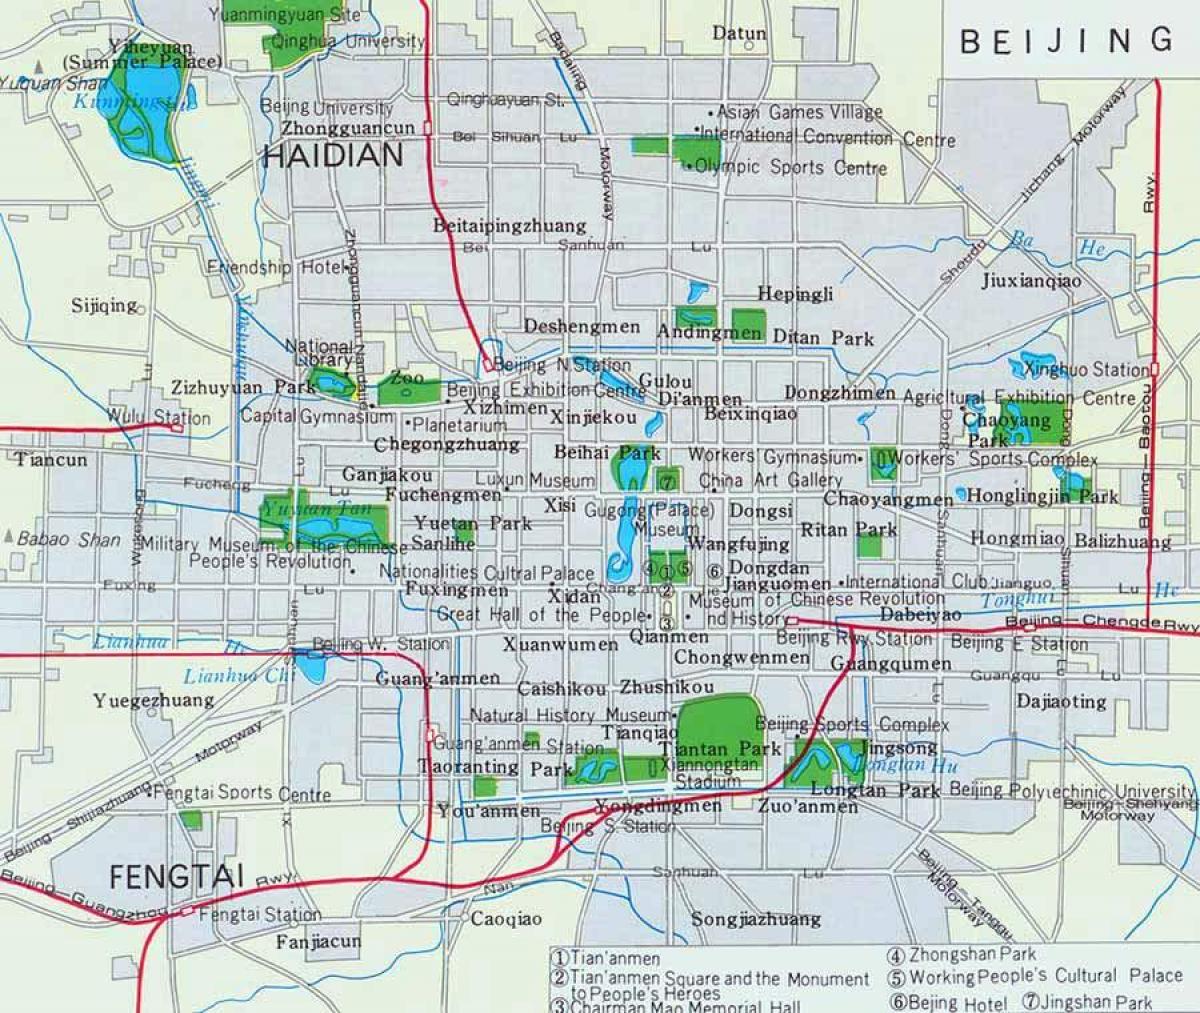 kort over Beijing city